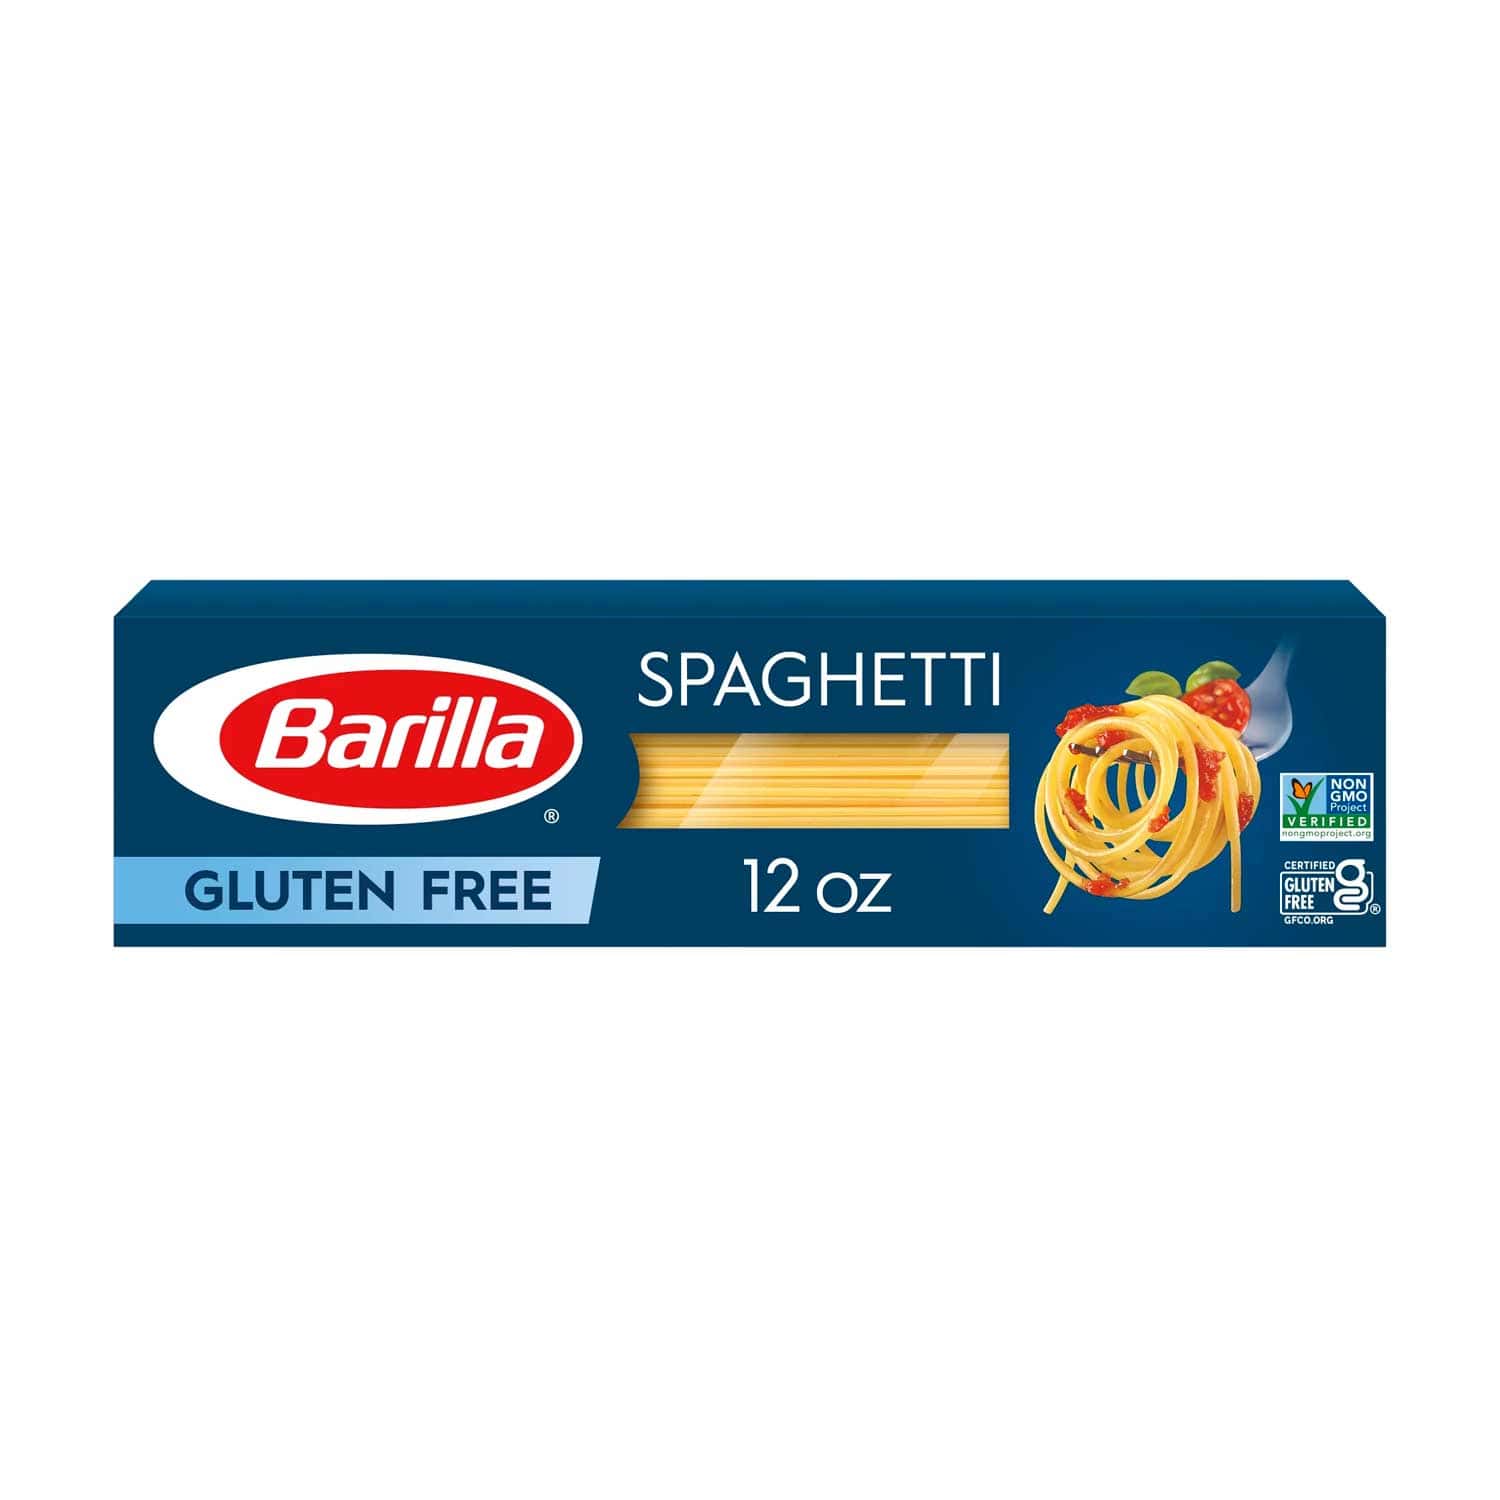 Spaghetti Libre de Gluten Barilla. 340 g